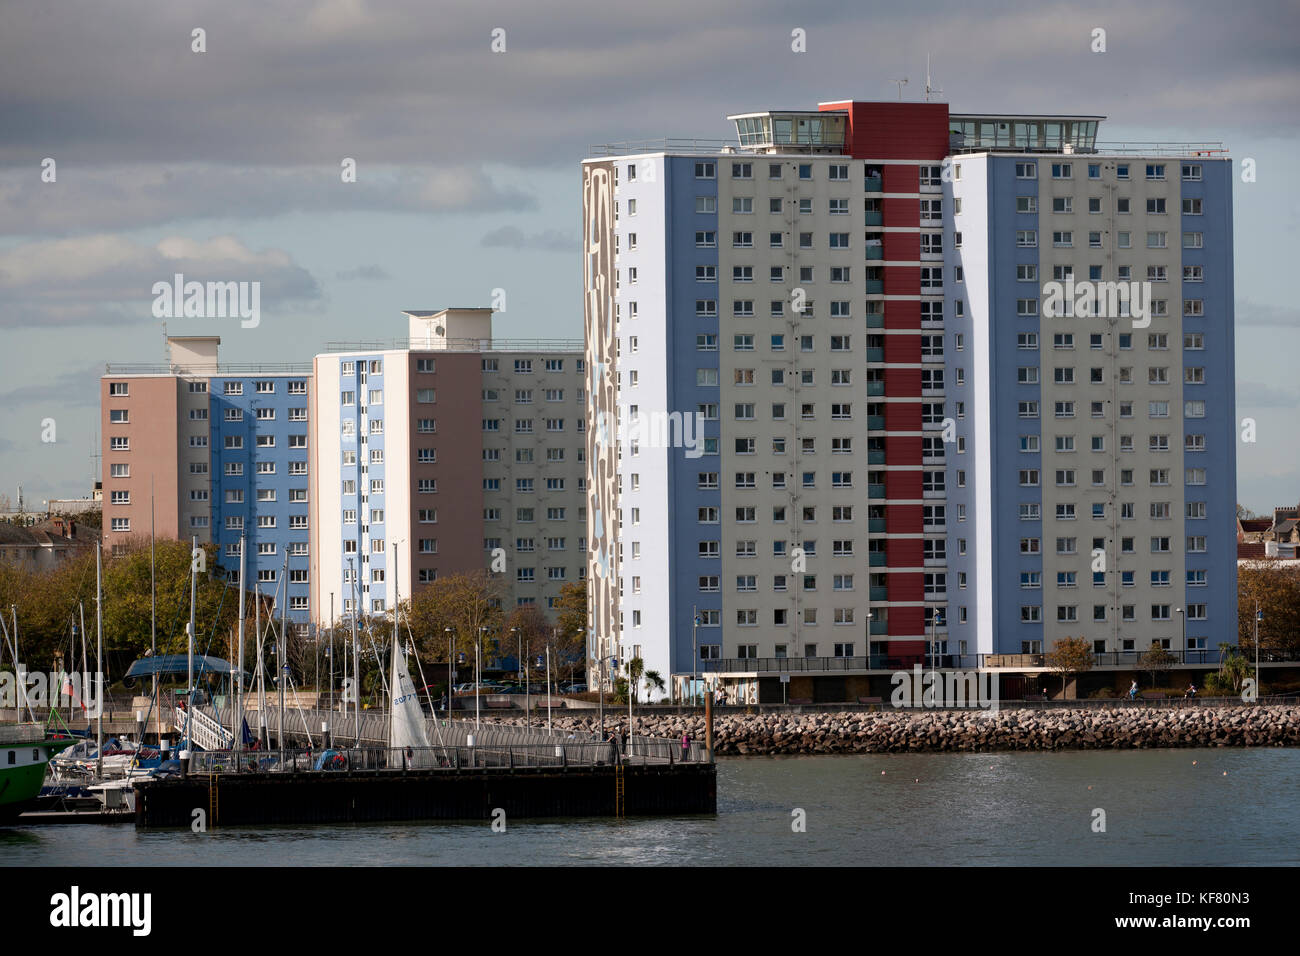 Des tours d'appartements sur le port de Portsmouth Harbour Gosport, Gosport, Hampshire, England, UK Banque D'Images